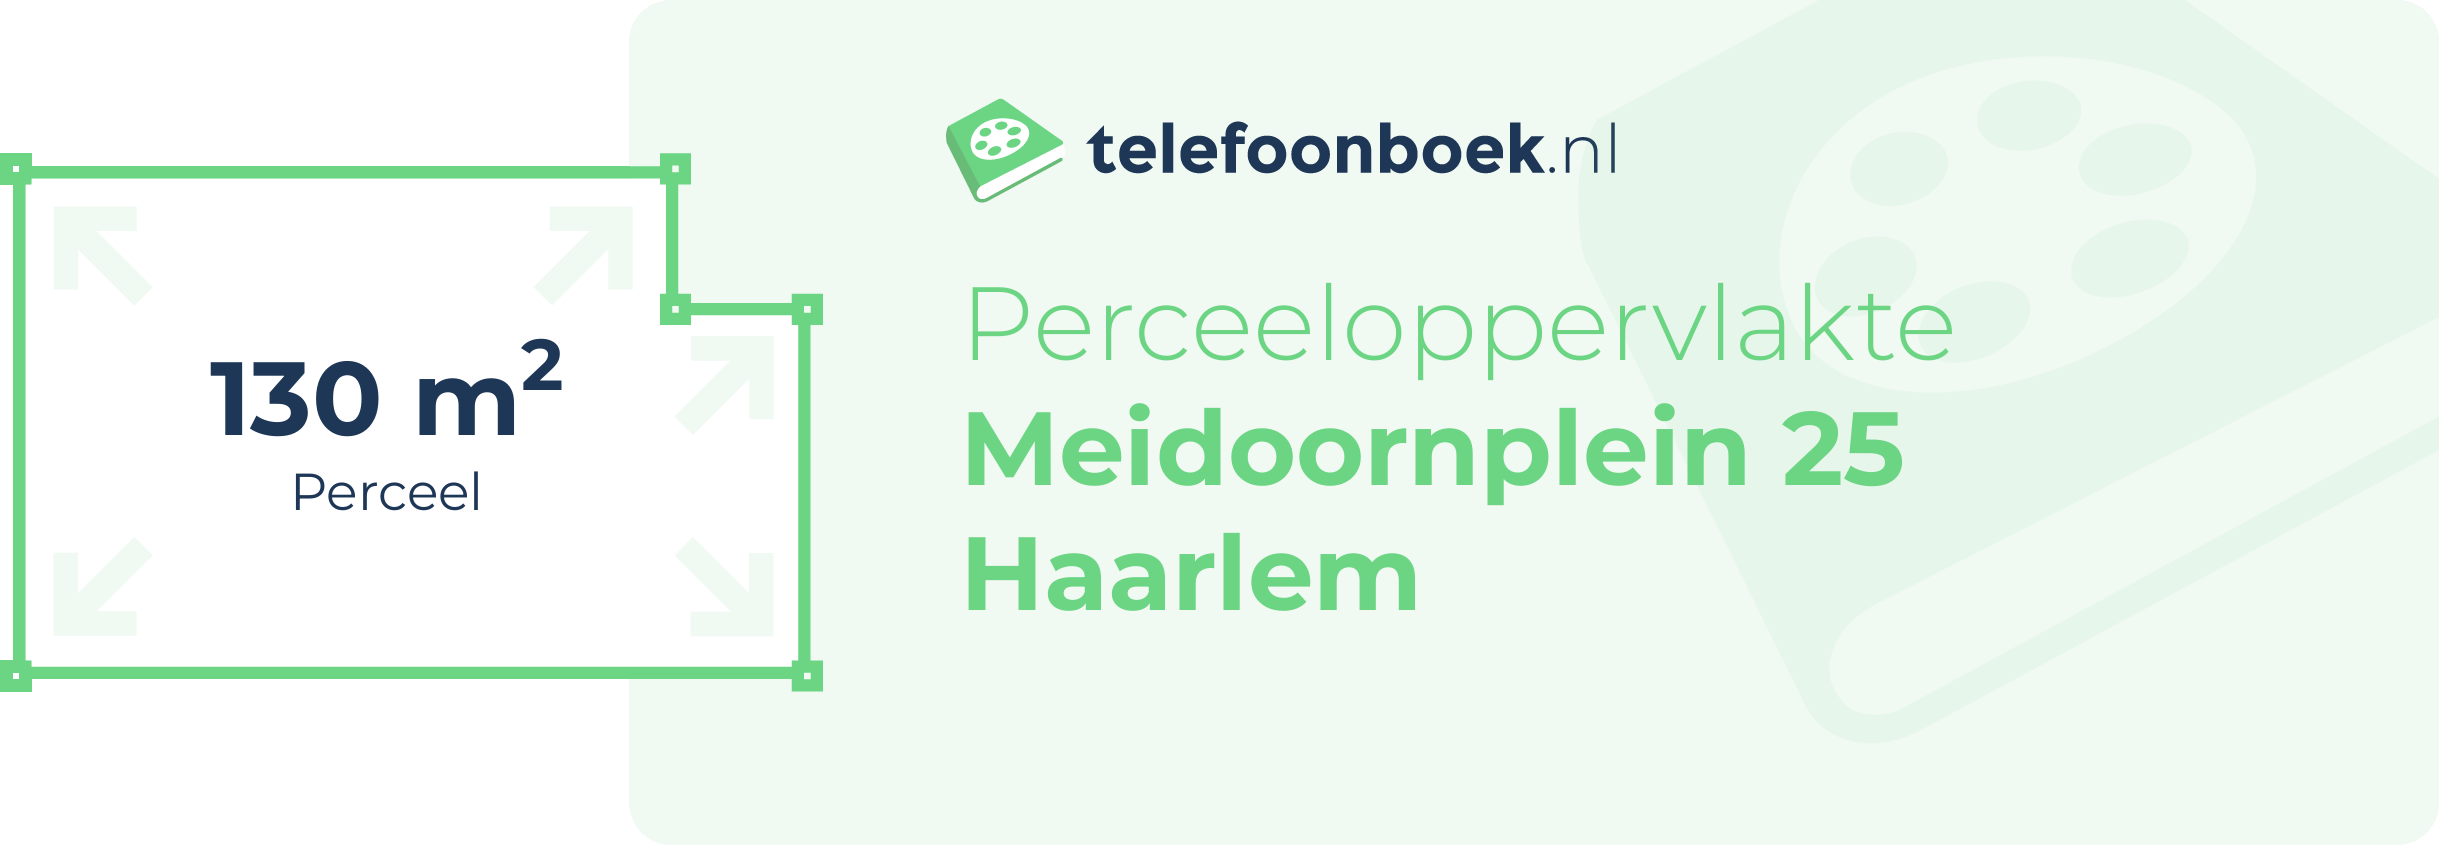 Perceeloppervlakte Meidoornplein 25 Haarlem